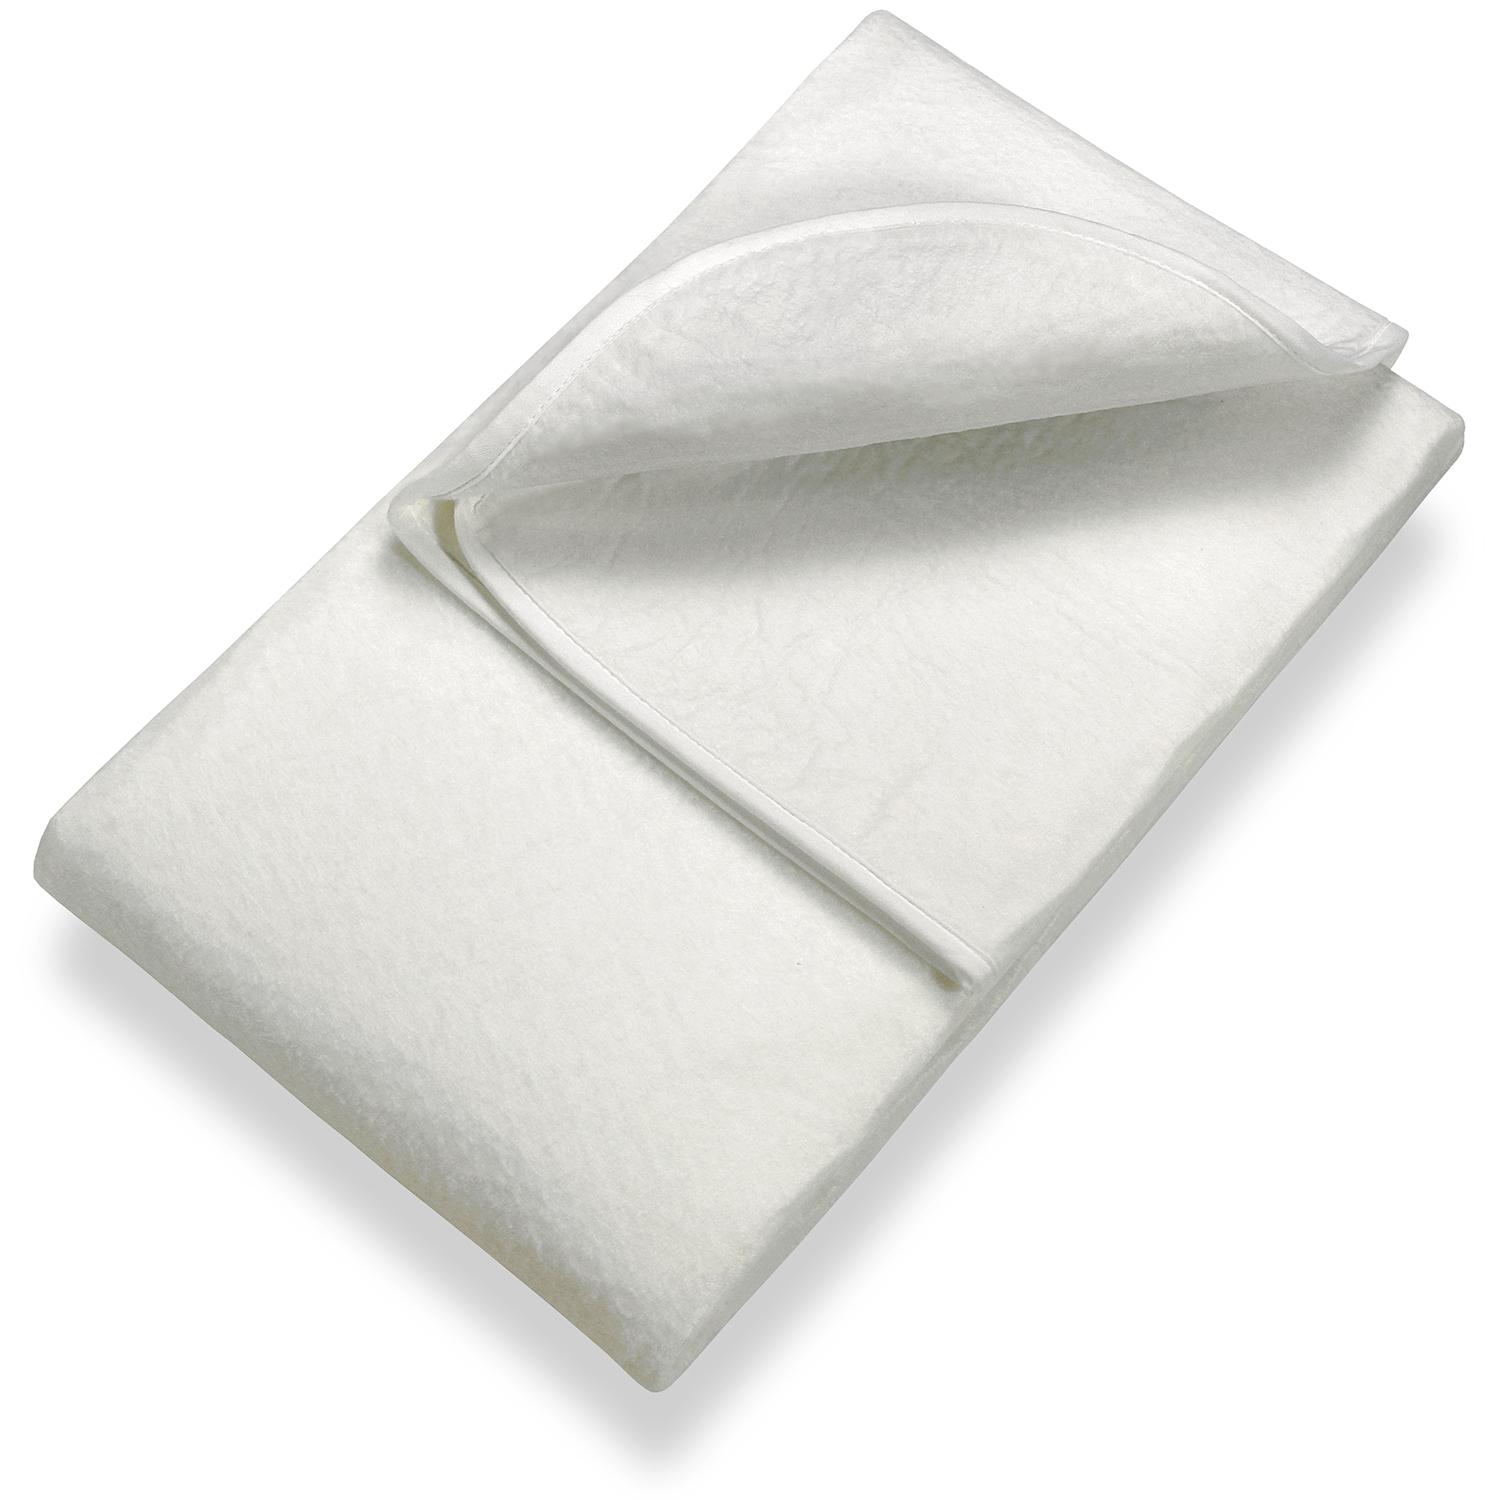 Sleezzz Basic rete in feltro ad aghi 140 x 200 cm, protezione per materasso da posizionare sulla rete a doghe, bianco